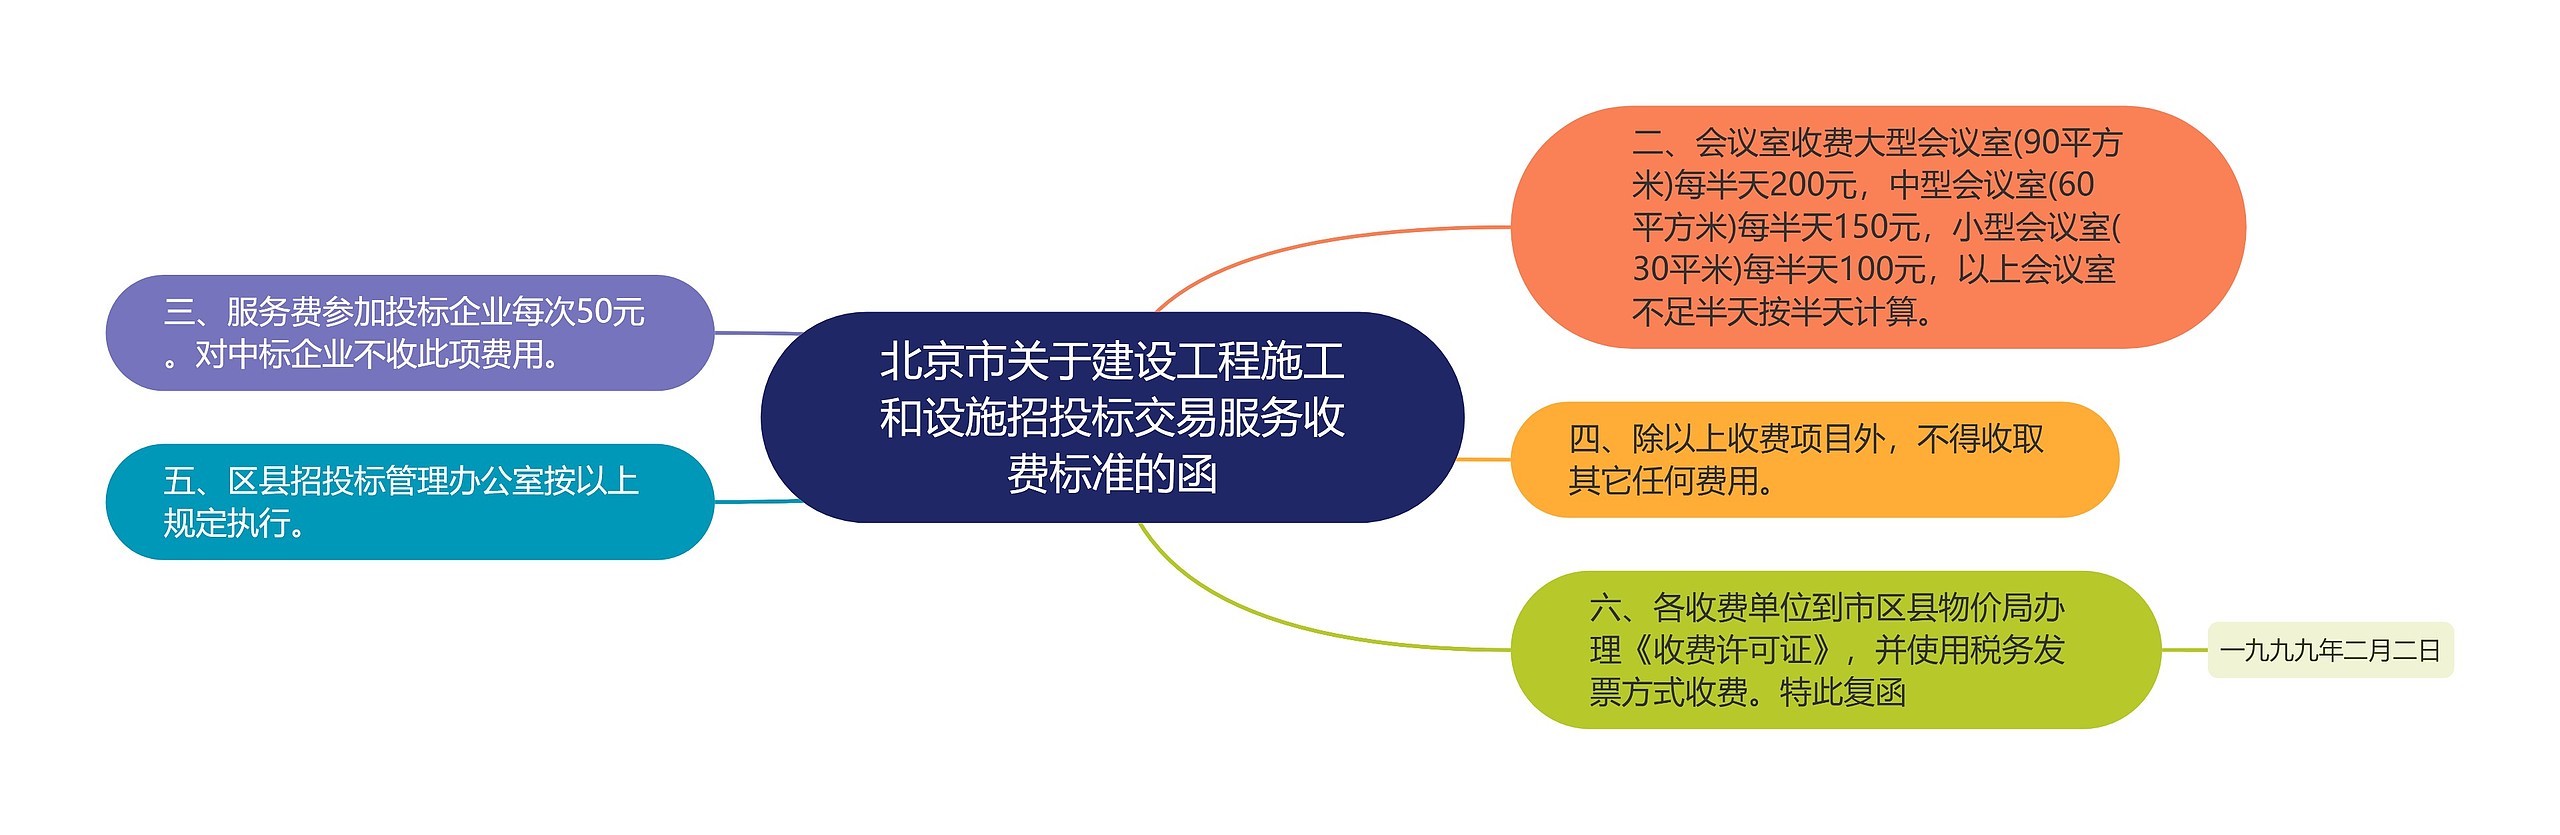 北京市关于建设工程施工和设施招投标交易服务收费标准的函思维导图